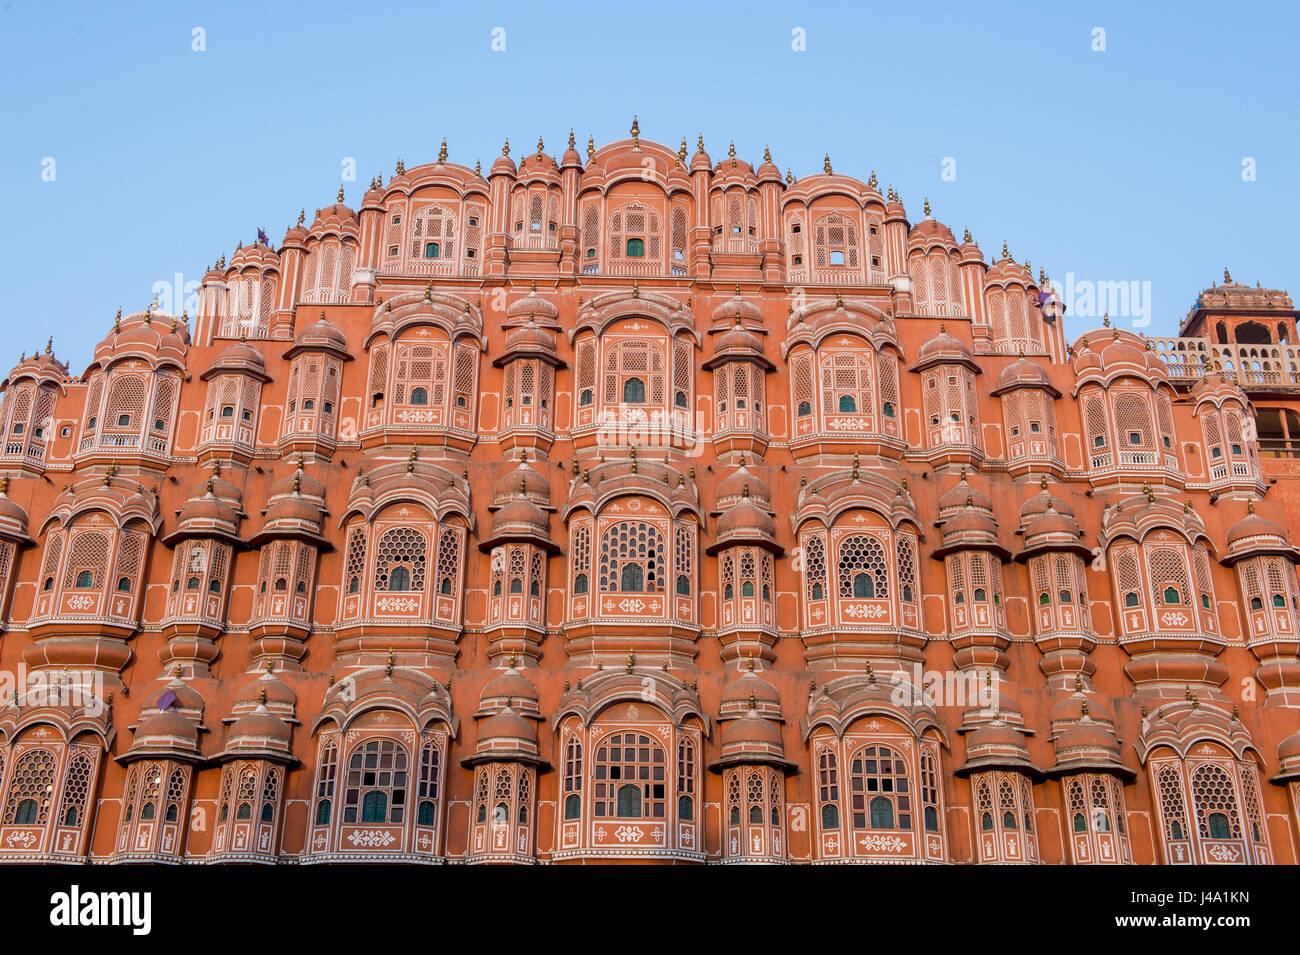 Hawa Mahal o "Palazzo della brezza' a Jaipur, India. Il palazzo è stato costruito in modo tale che il royal le donne potevano osservare gli eventi di strada senza essere visto. Foto Stock